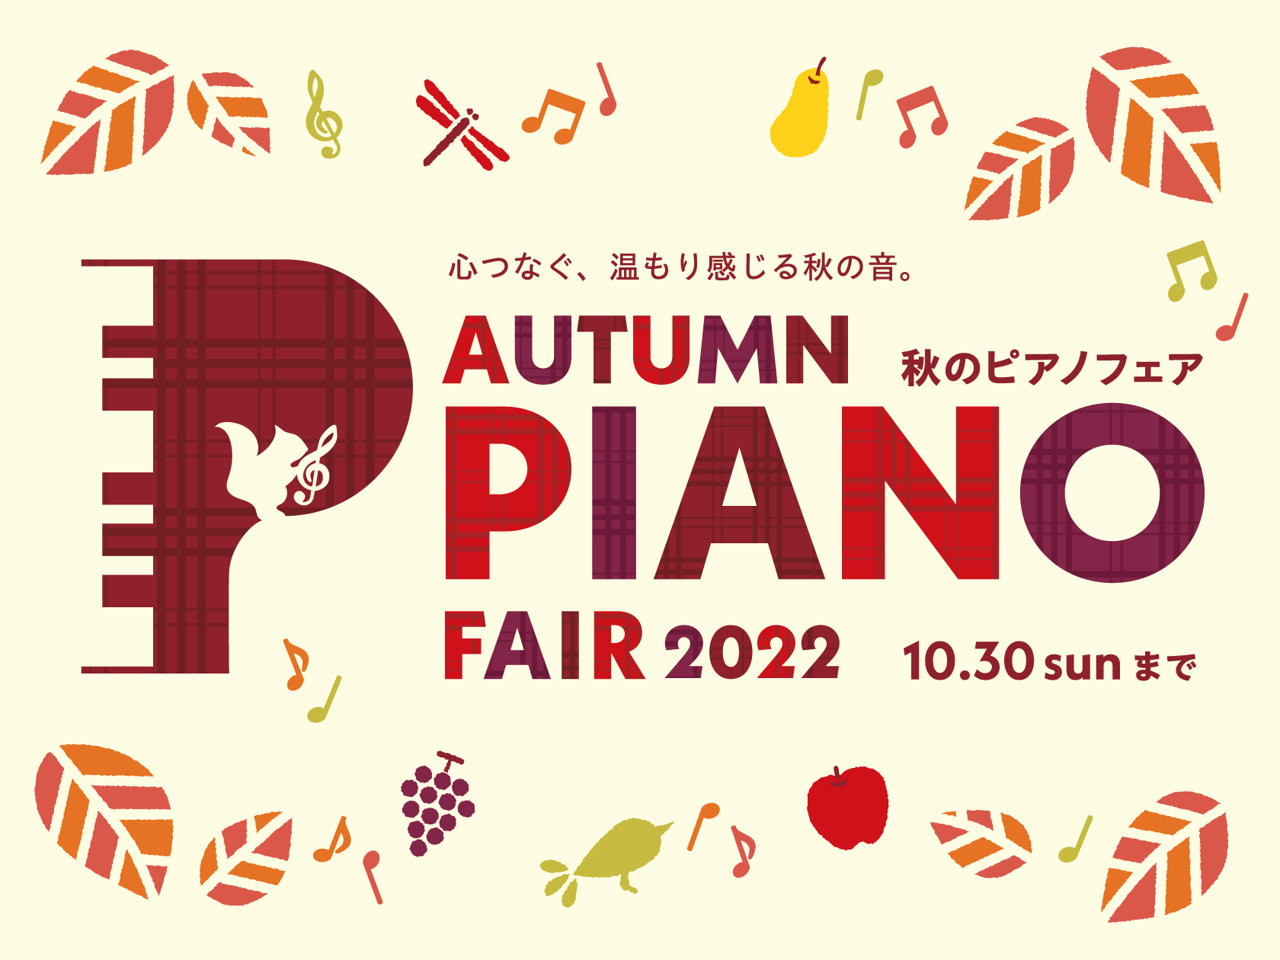 CONTENTS秋のピアノフェア2022秋のピアノフェア：特典ご紹介アプリマイル付与って？秋のピアノフェア2022 9月に入り、やっと過ごしやすい気候になってきました。秋と言えば「芸術の秋」。音楽も芸術の仲間です！そこで、島村楽器では2022年9月10日（土）から10月30日（日）まで「秋のピアノフ […]